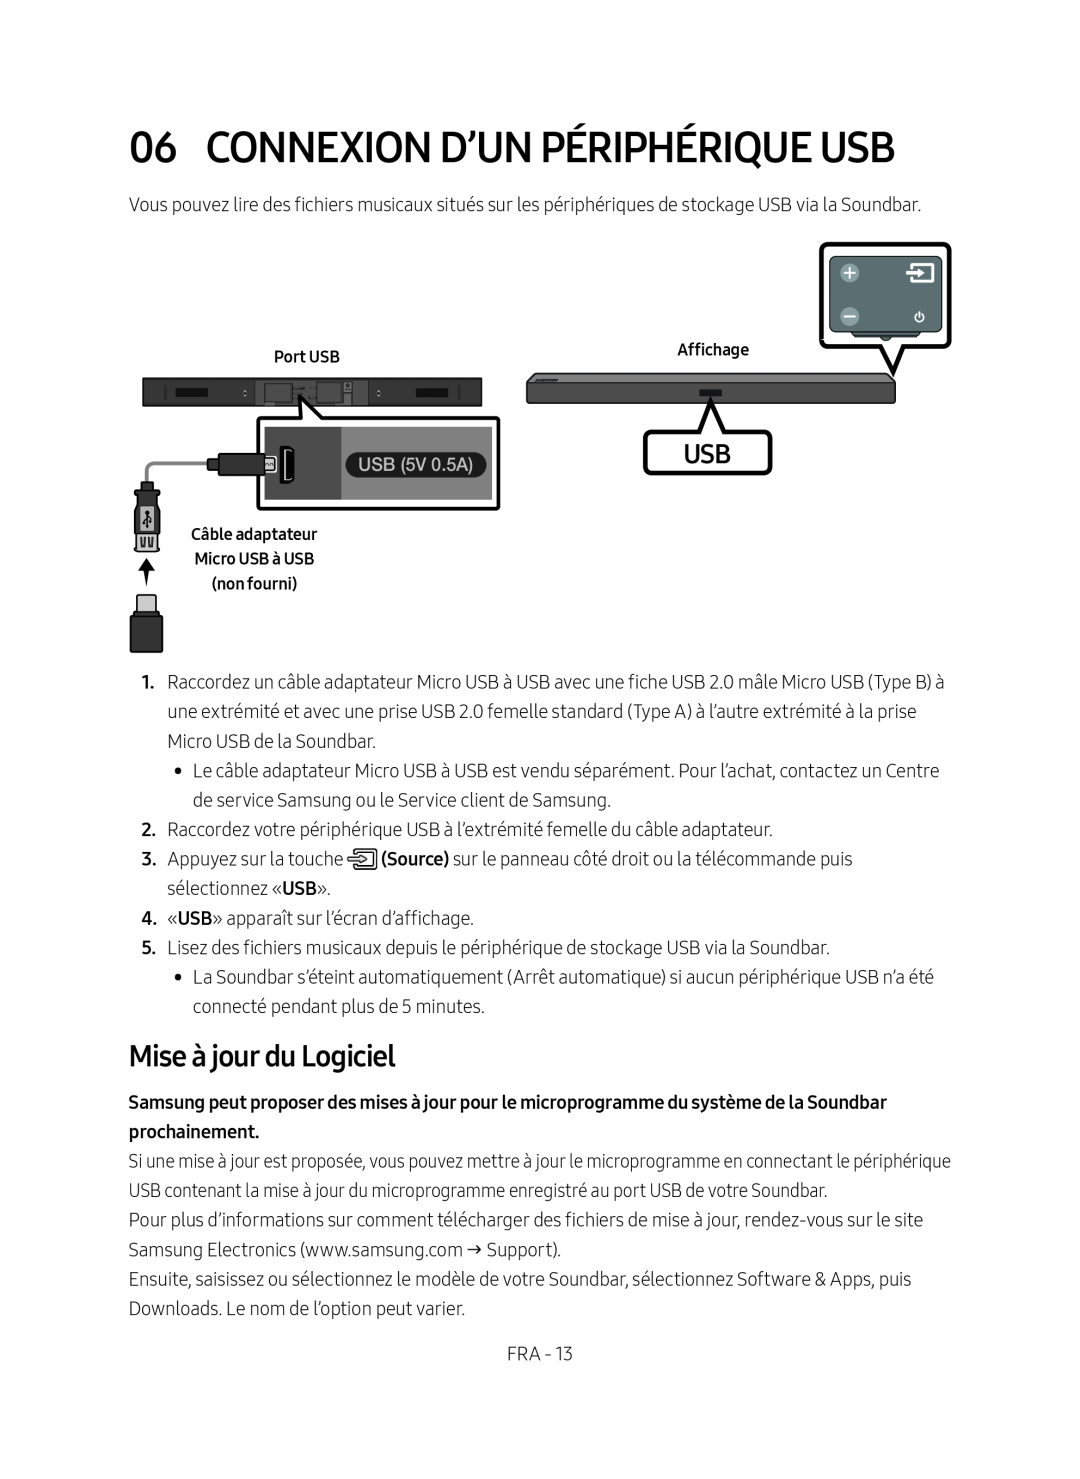 Samsung HW-M450/EN, HW-M450/ZG, HW-M450/ZF manual Connexion D’Un Périphérique Usb, Mise à jour du Logiciel, USB 5V 0.5A 